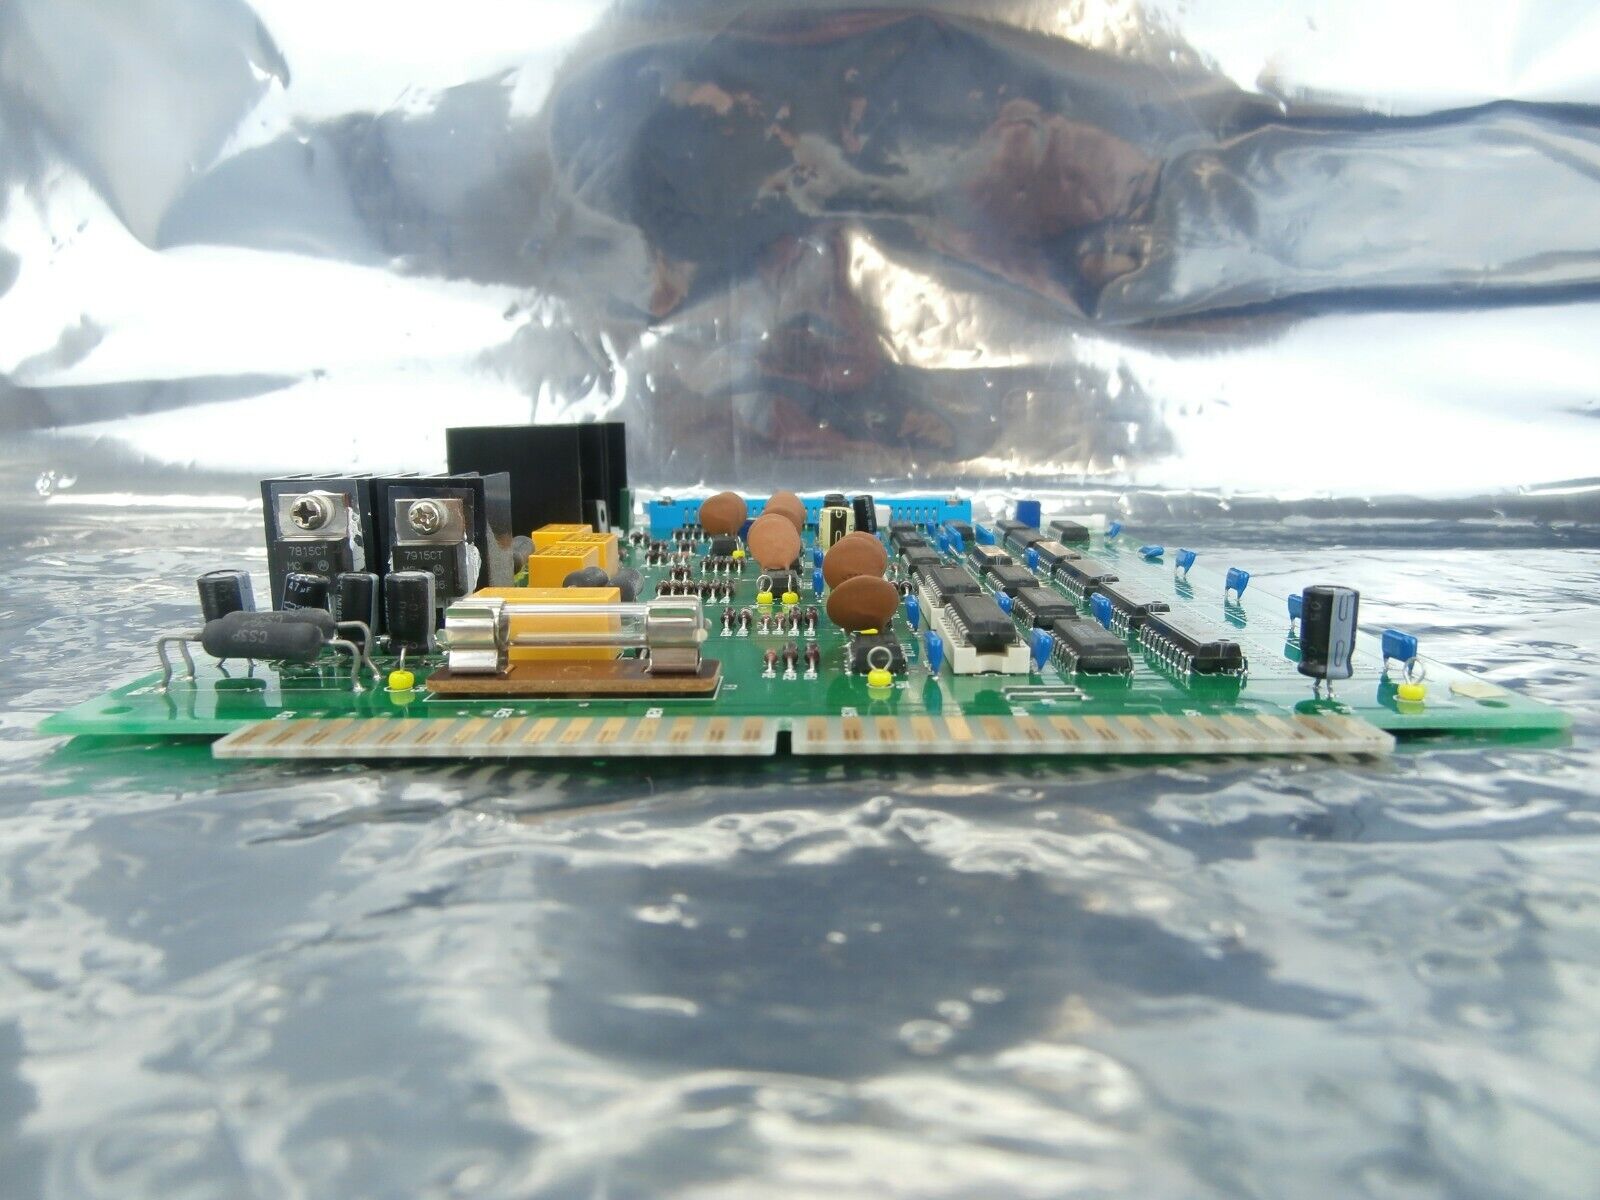 JEOL AP002379-00 Processor Board PCB Card AFC PB TN JSM-6400F Used Working